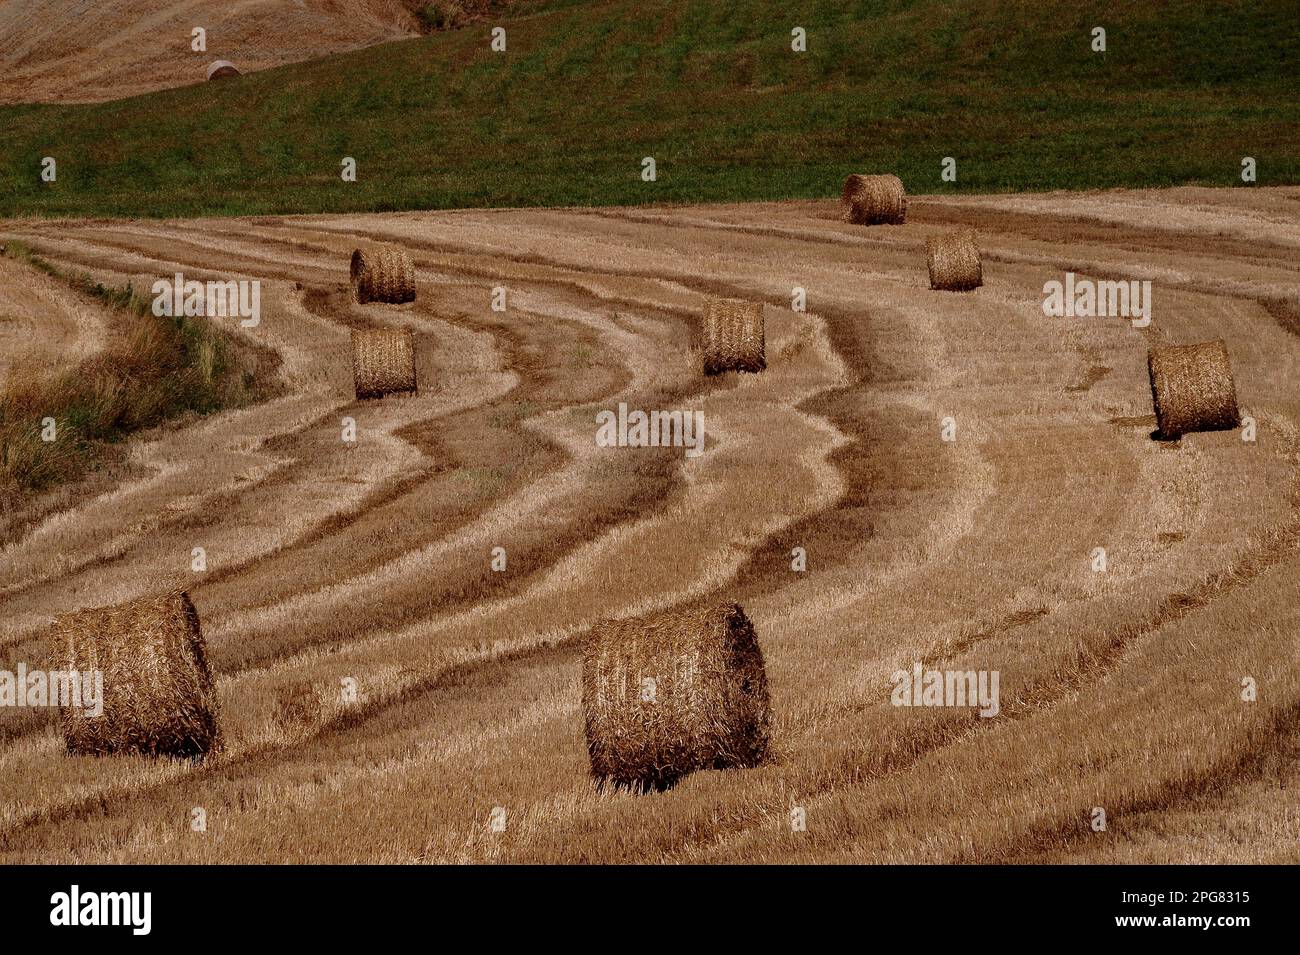 Bandes tourbillonnantes et bandes ondulantes laissées en chaume de champ de blé après la récolte de juillet dans le paysage vallonné de Crete Senesi au sud-est de l'ancienne ville de Sienne, dans le centre de la Toscane en Italie. Banque D'Images